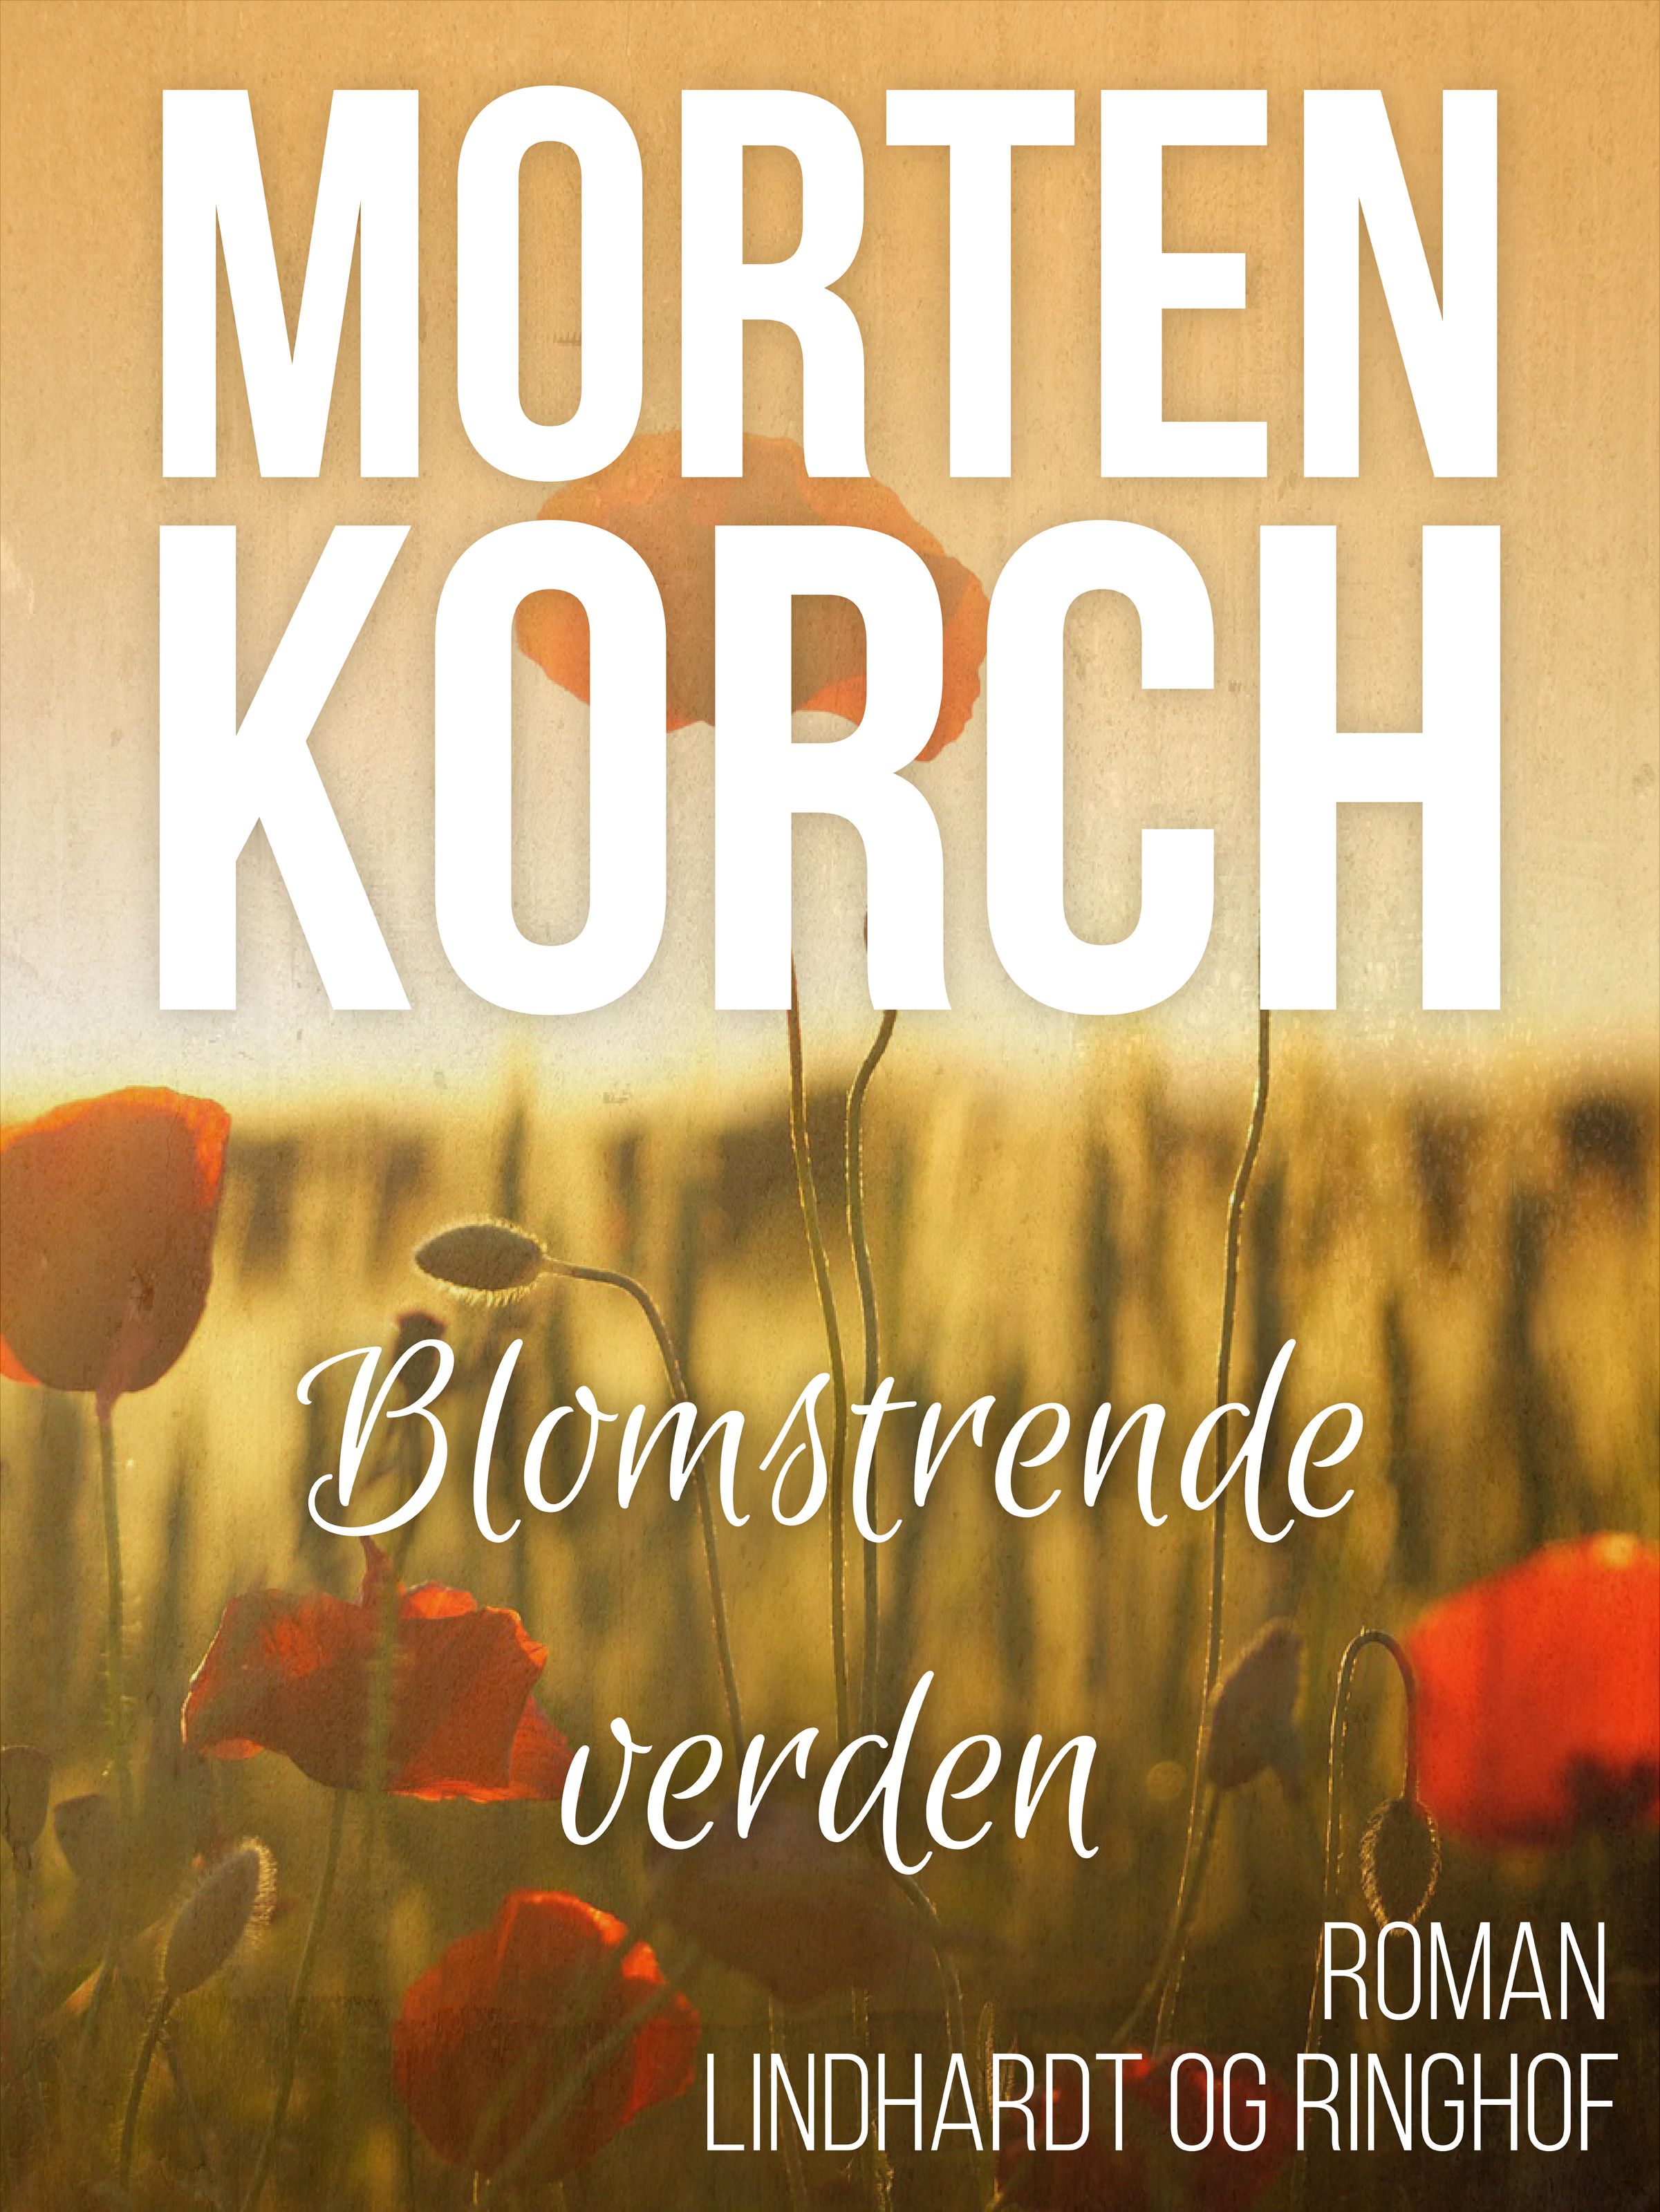 Blomstrende verden, lydbog af Morten Korch